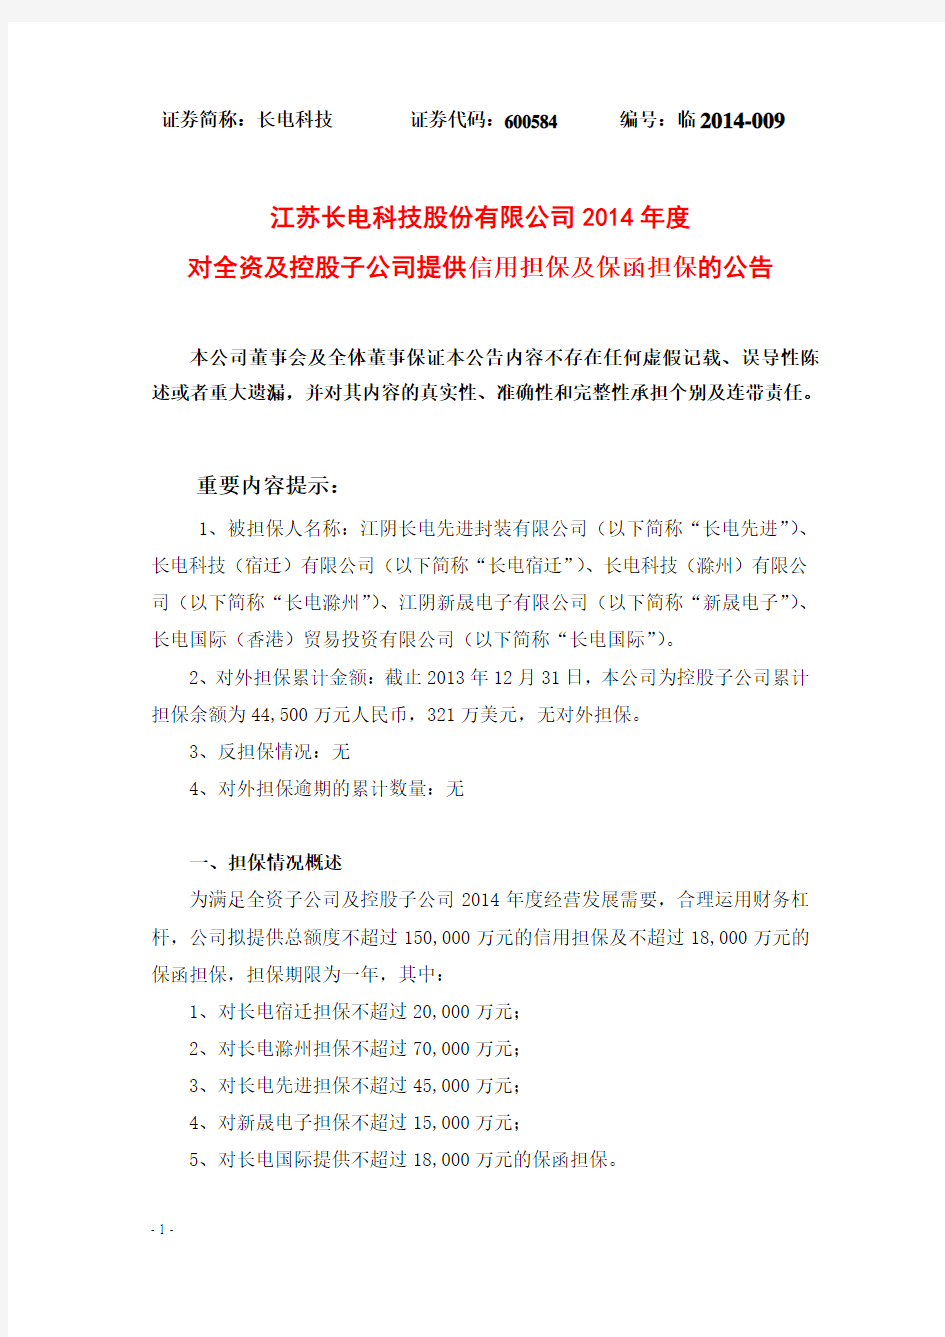 江苏长电科技股份有限公司 2014 年度 对全资及控股子公司